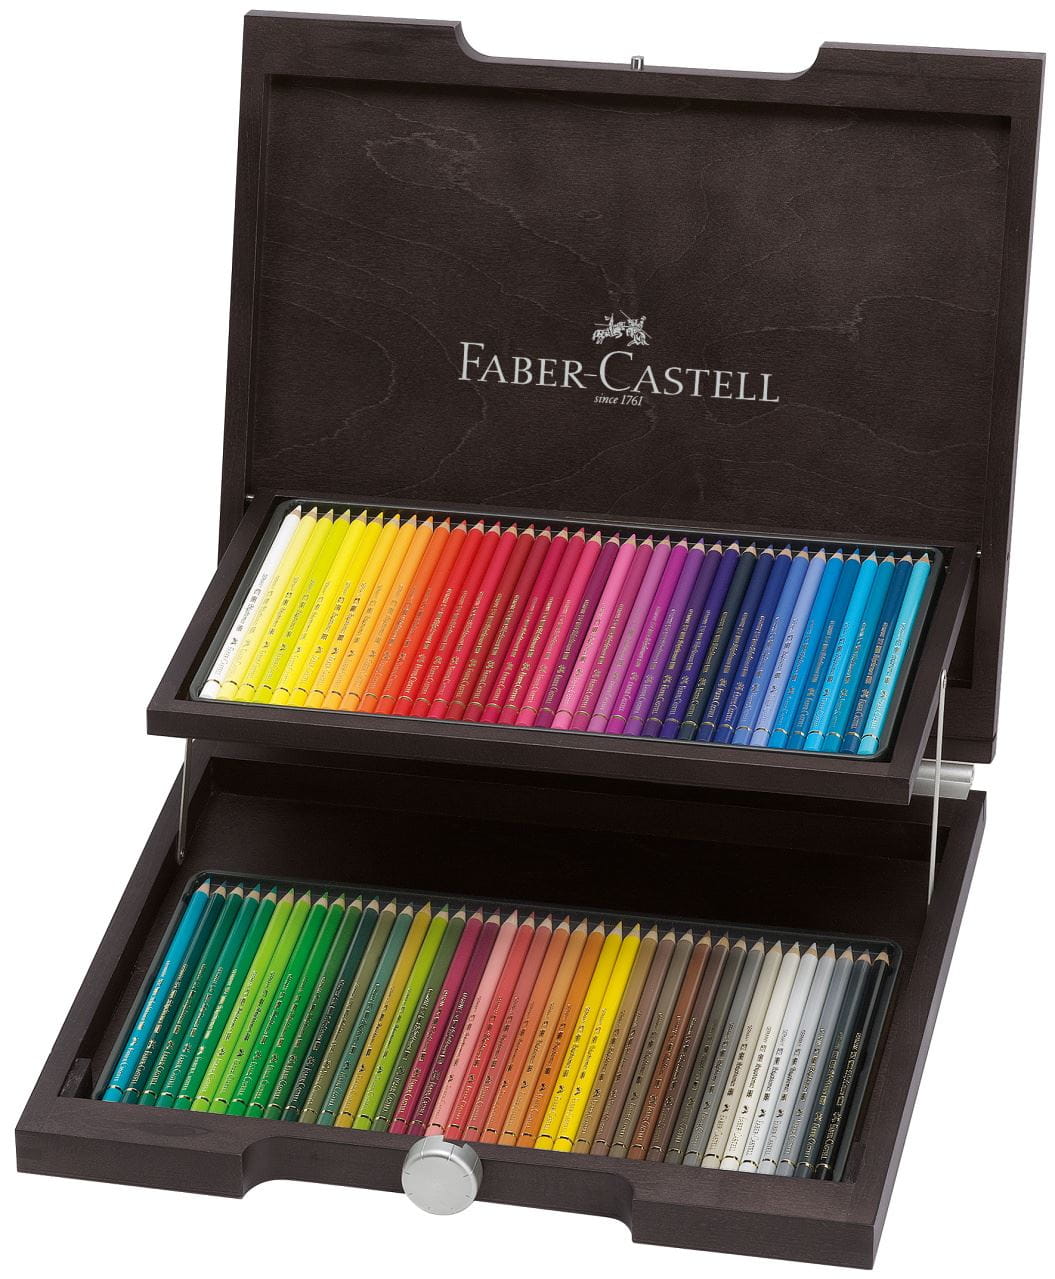 Faber-Castell - Polychromos艺术家级油性彩铅